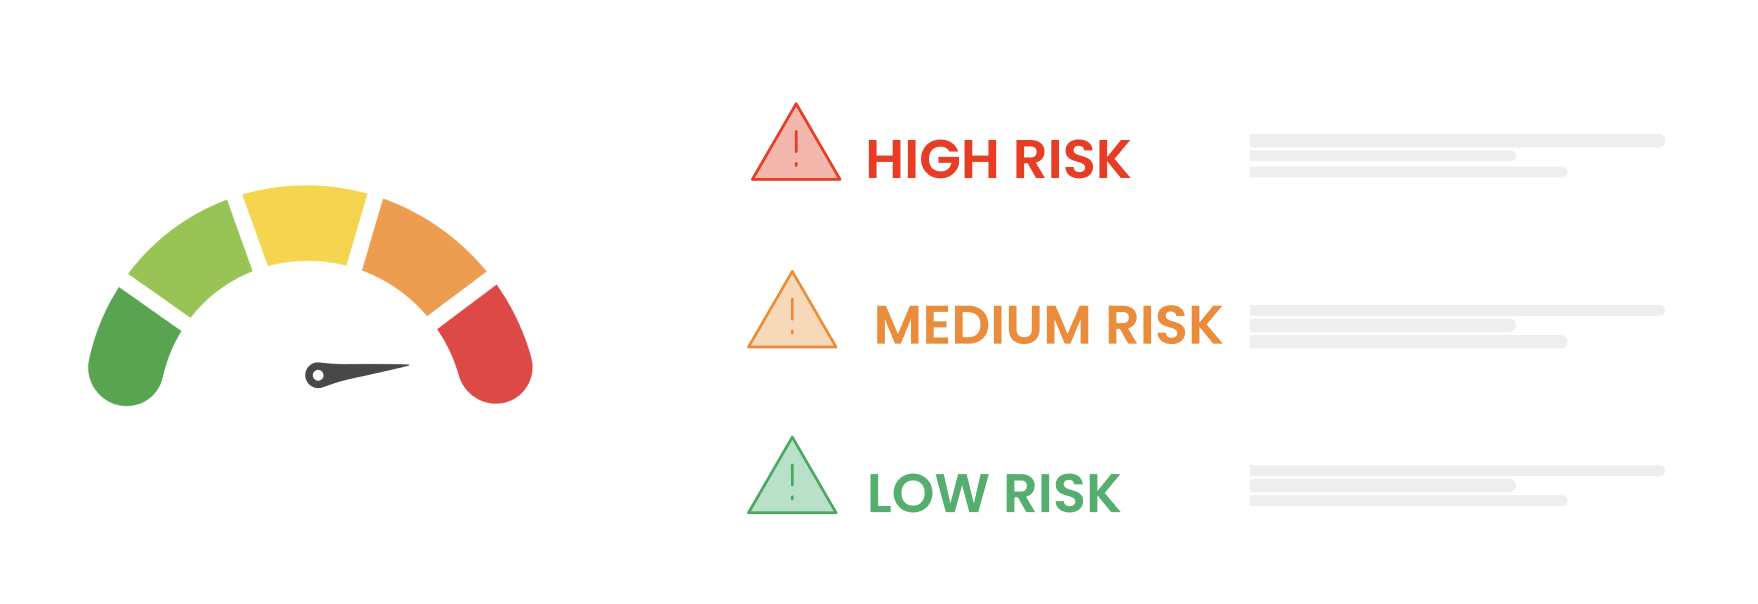 marketing risk radar